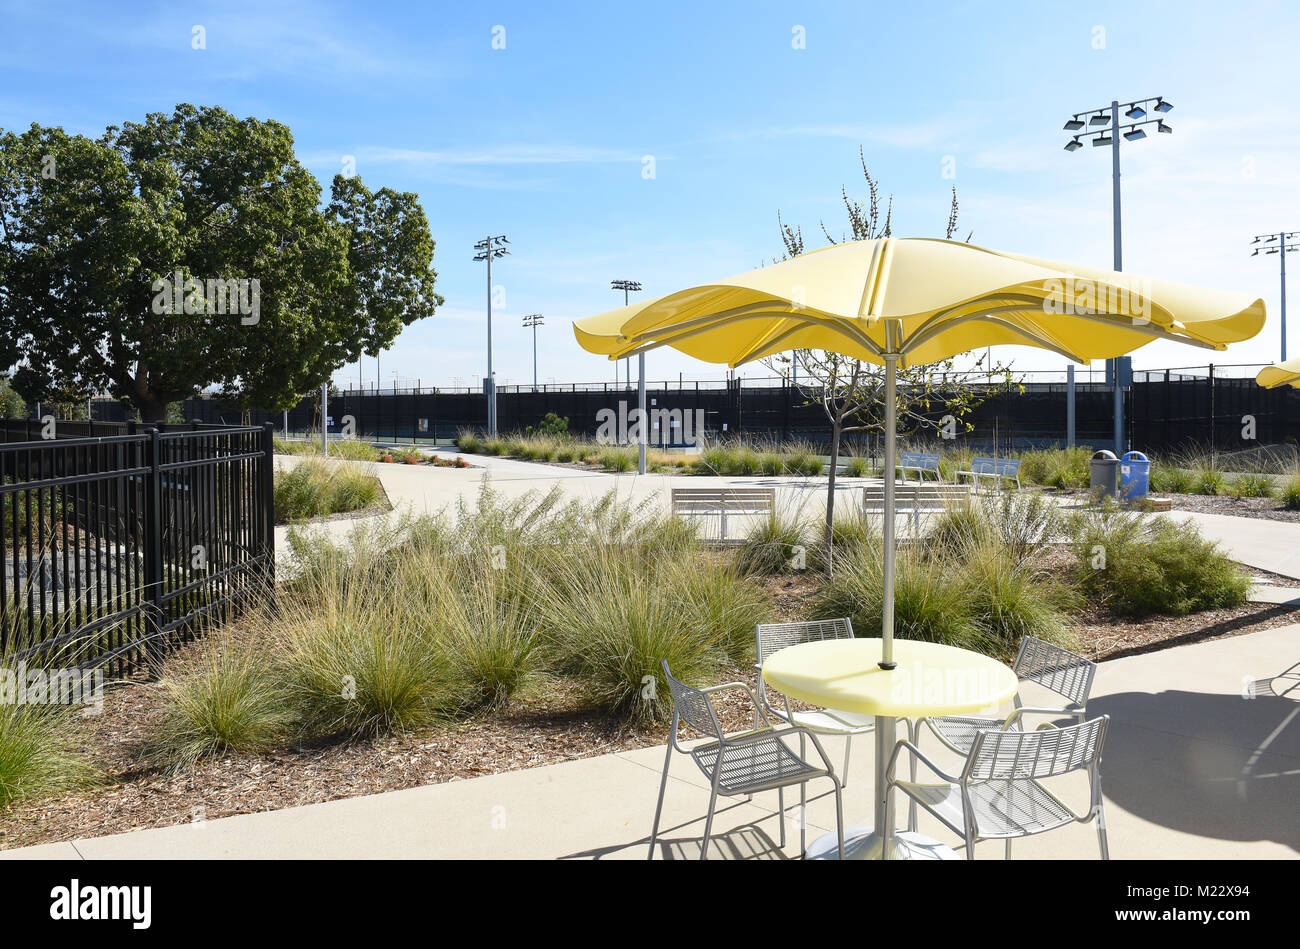 IRVINE, CALIFORNIE - Le 2 février 2018 : Tennis dans le Grand Parc. Le complexe dispose de 25 courts de tennis. Banque D'Images